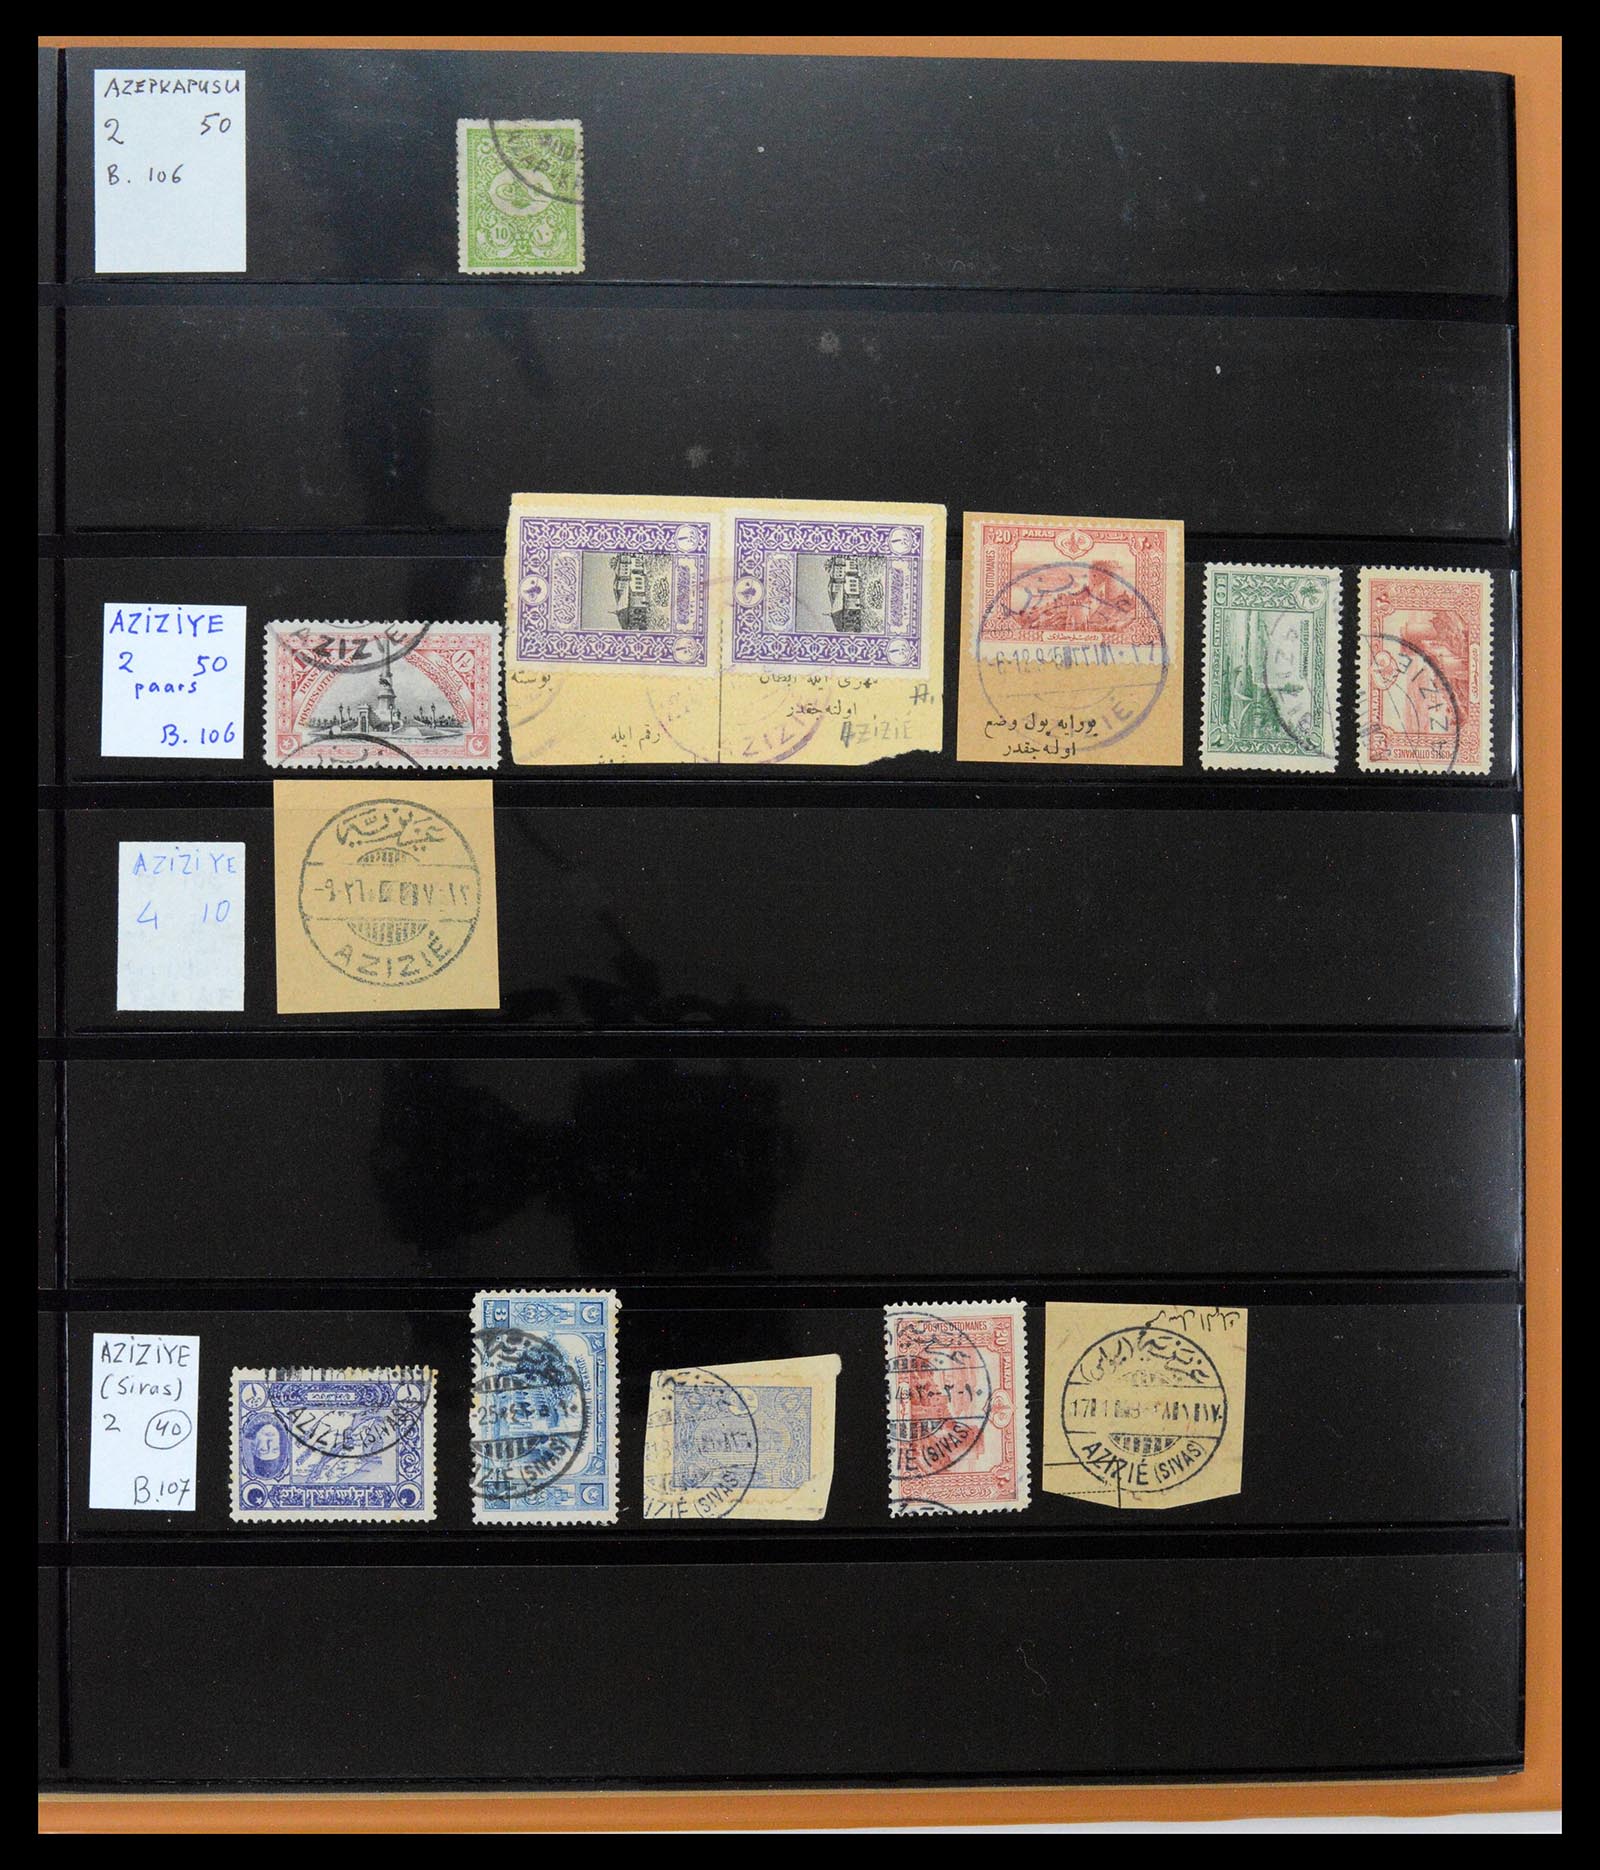 39345 0040 - Postzegelverzameling 39345 Turkije supercollectie stempels 1865-1930.